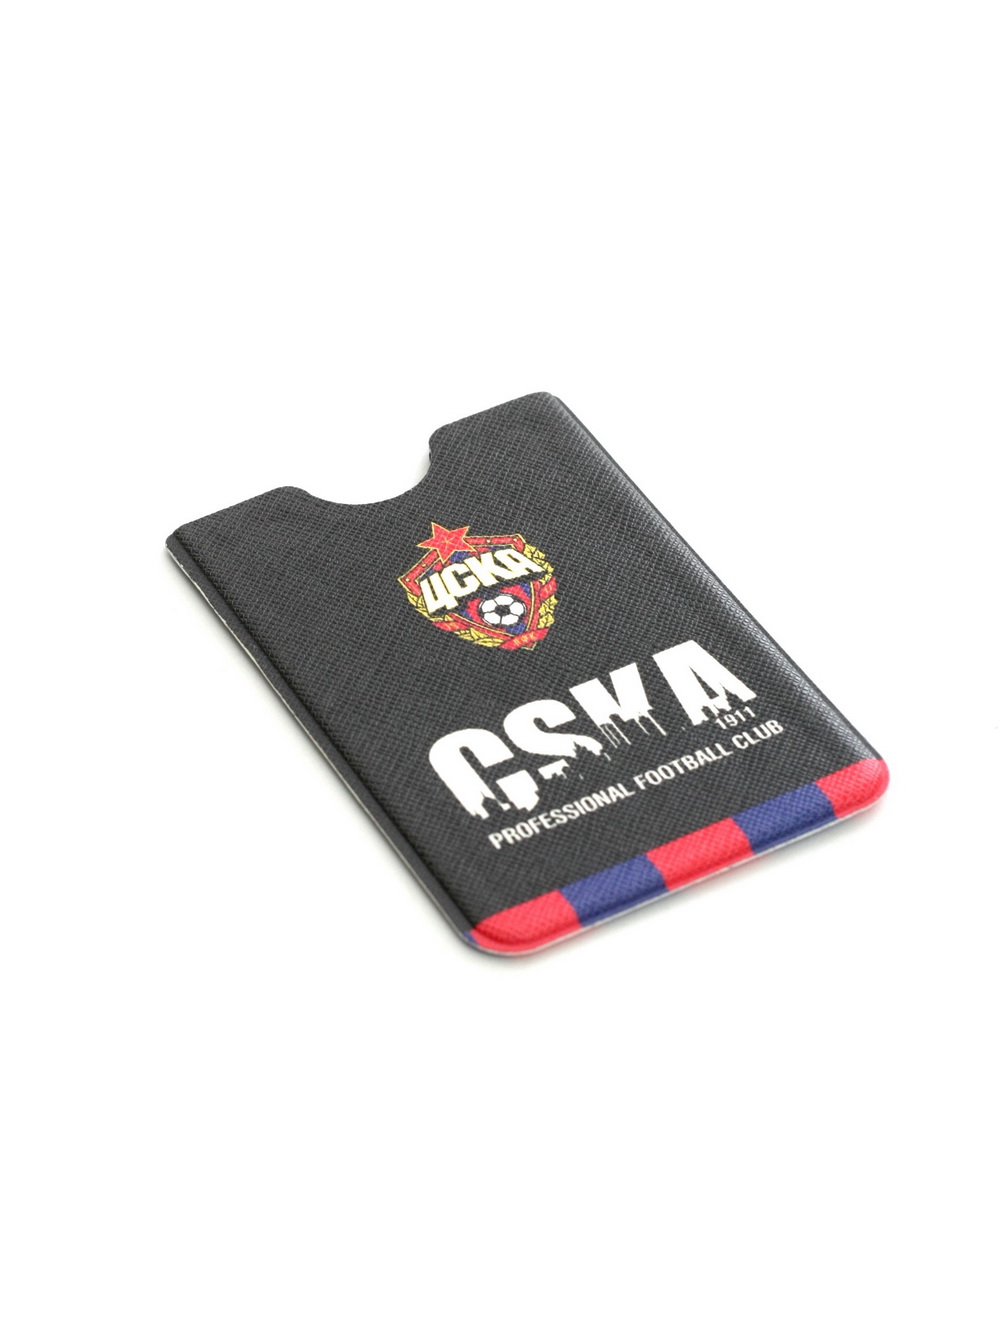 Чехол для кредитной карты с RFID защитой PFC CSKA ПФК ЦСКА 92131109 - фото 1